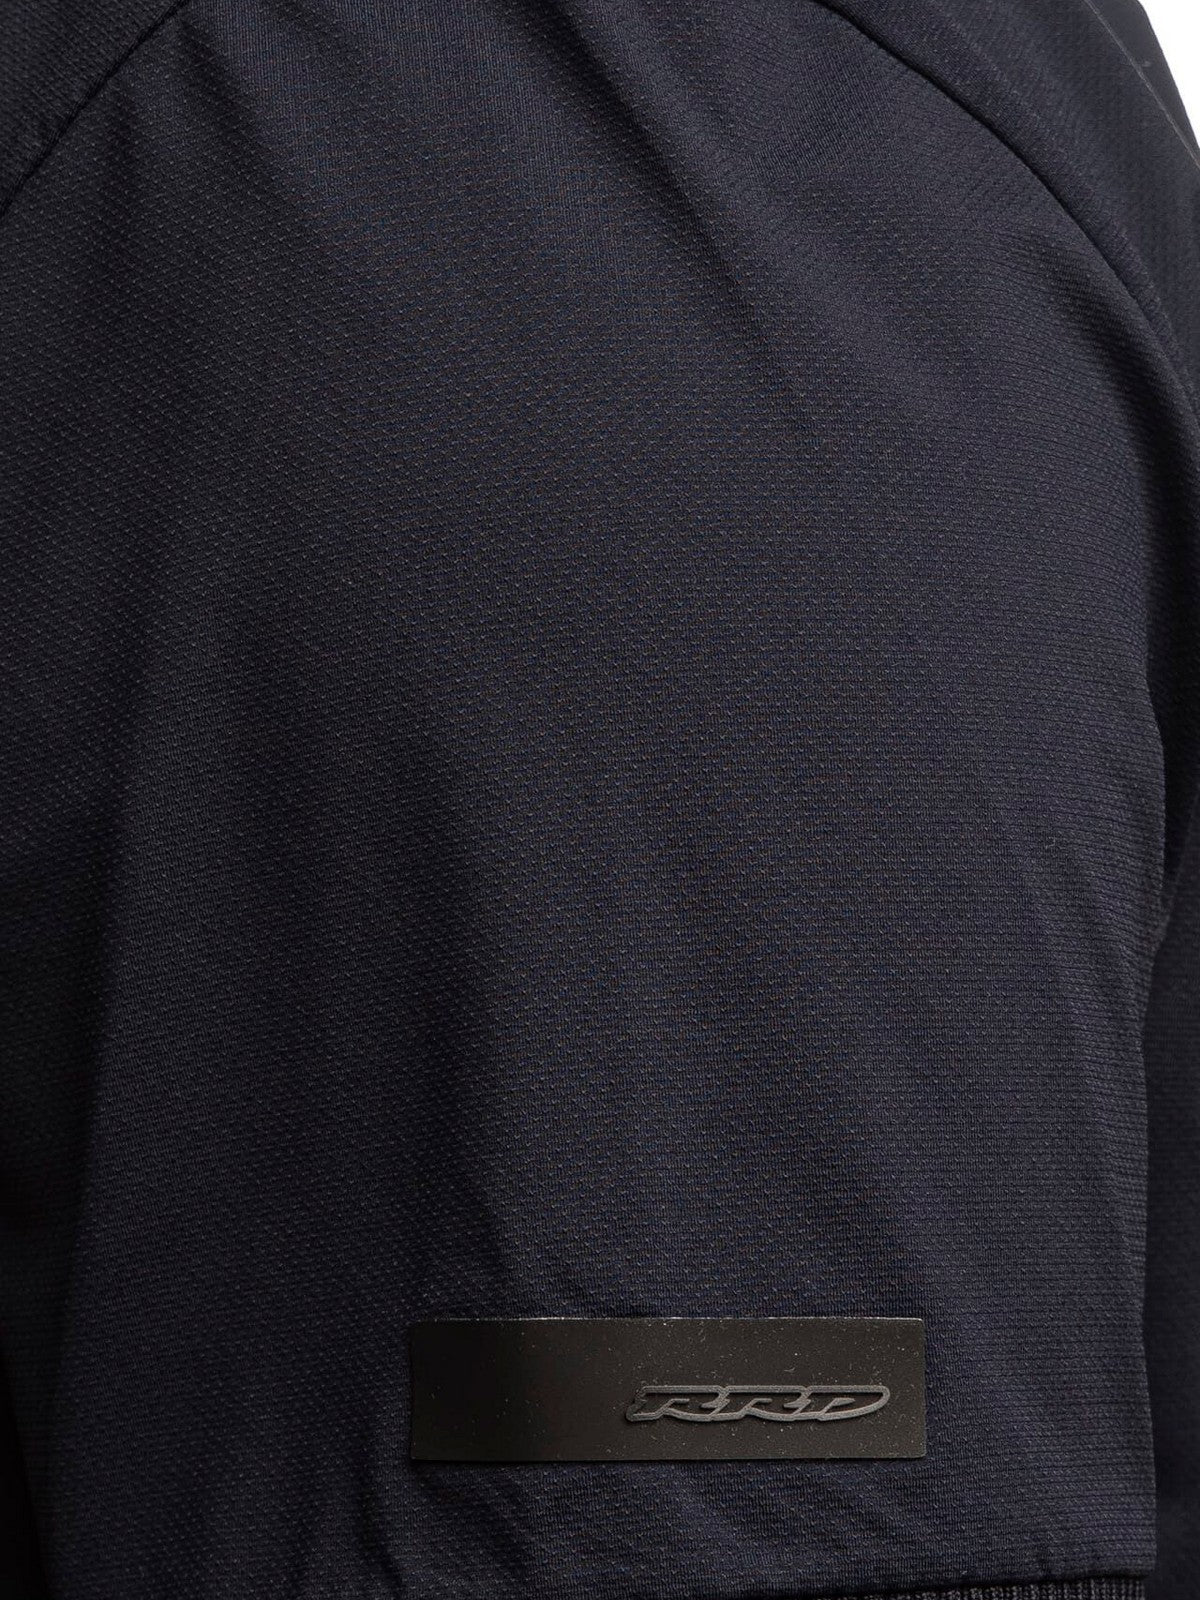 RRD T-Shirt et Polo pour hommes 24209 60 Bleu